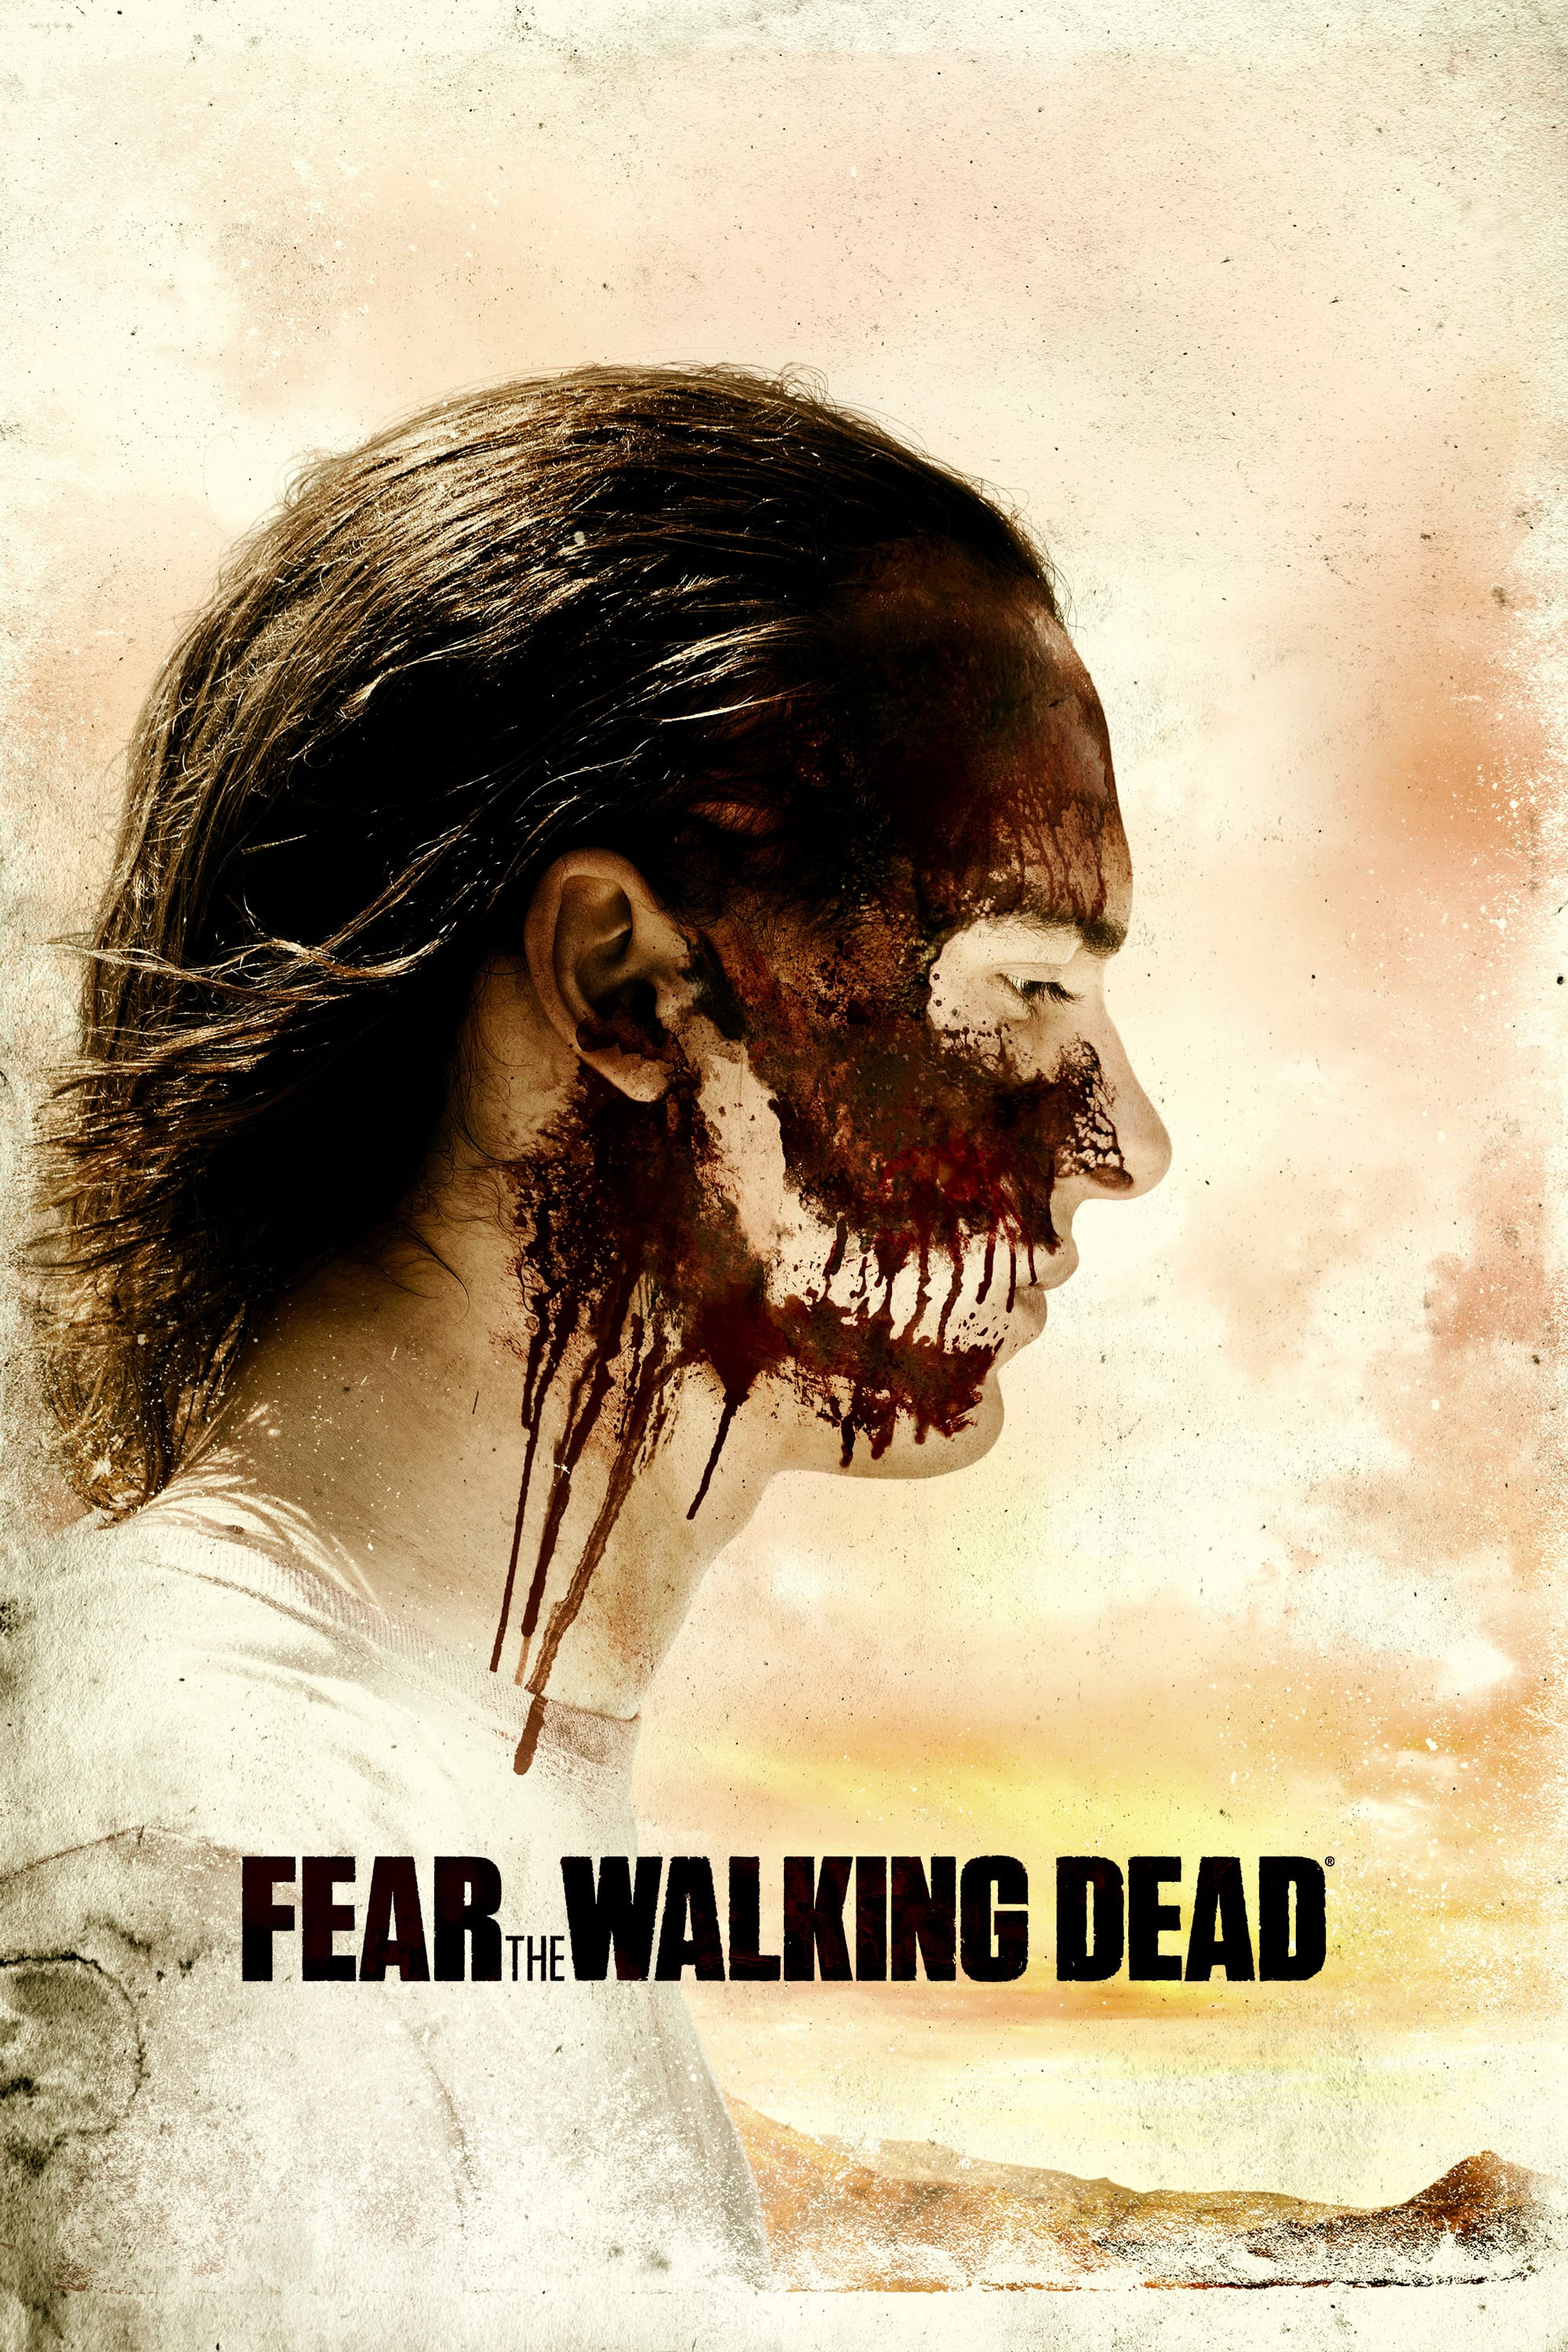 Walking Dead Season 3 Free